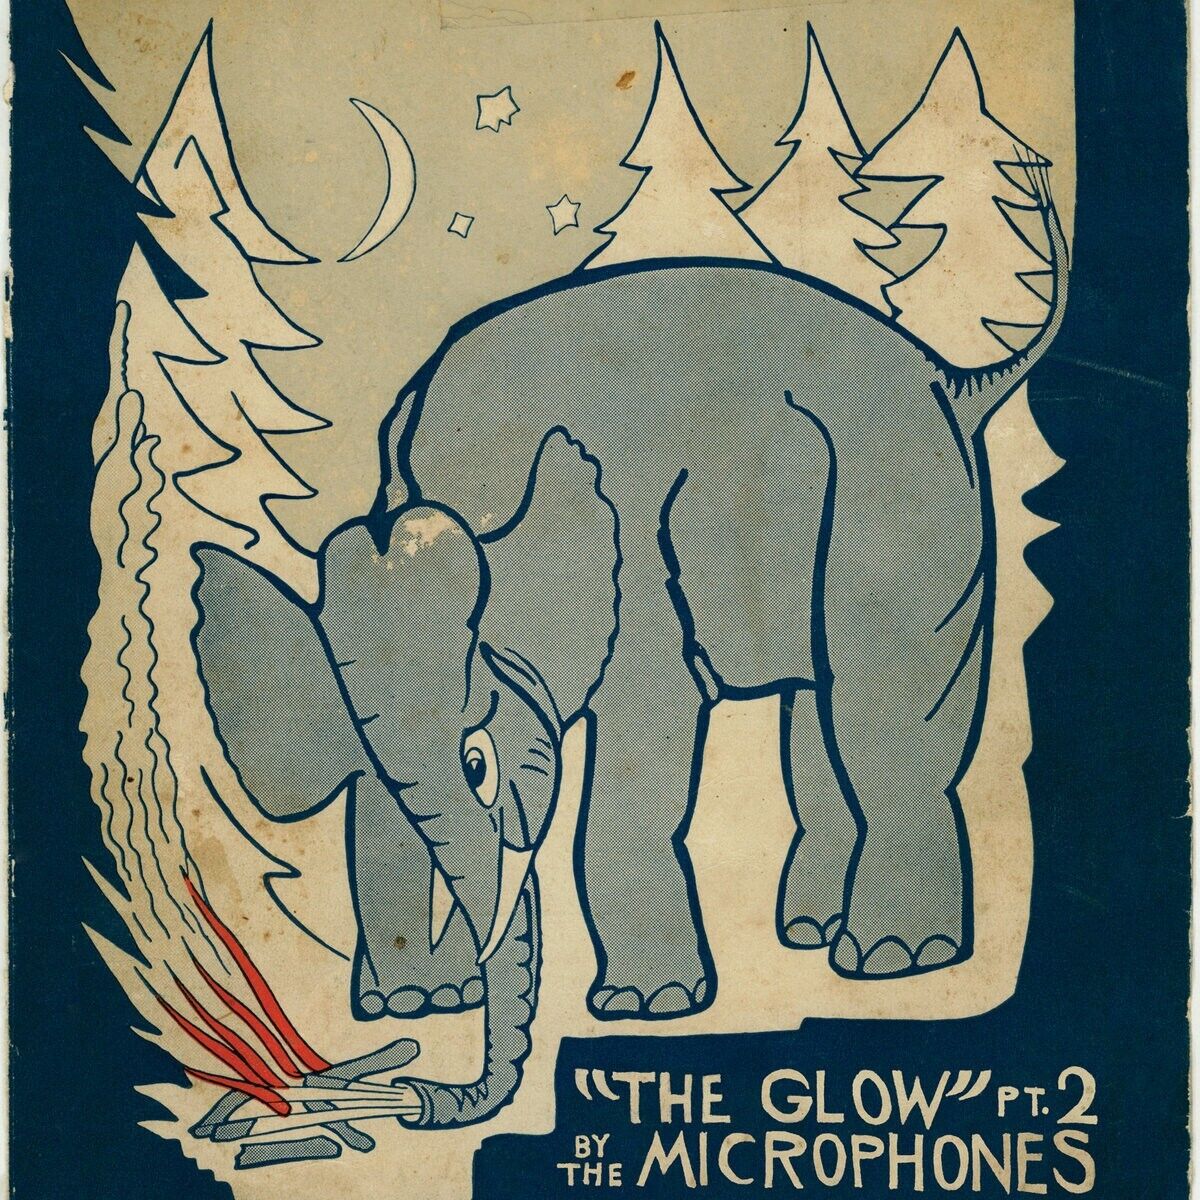 The Microphones - The Glow Pt. 2 Vinyl 2xLP NEW MINT 2LP LP Part 2 with Posters